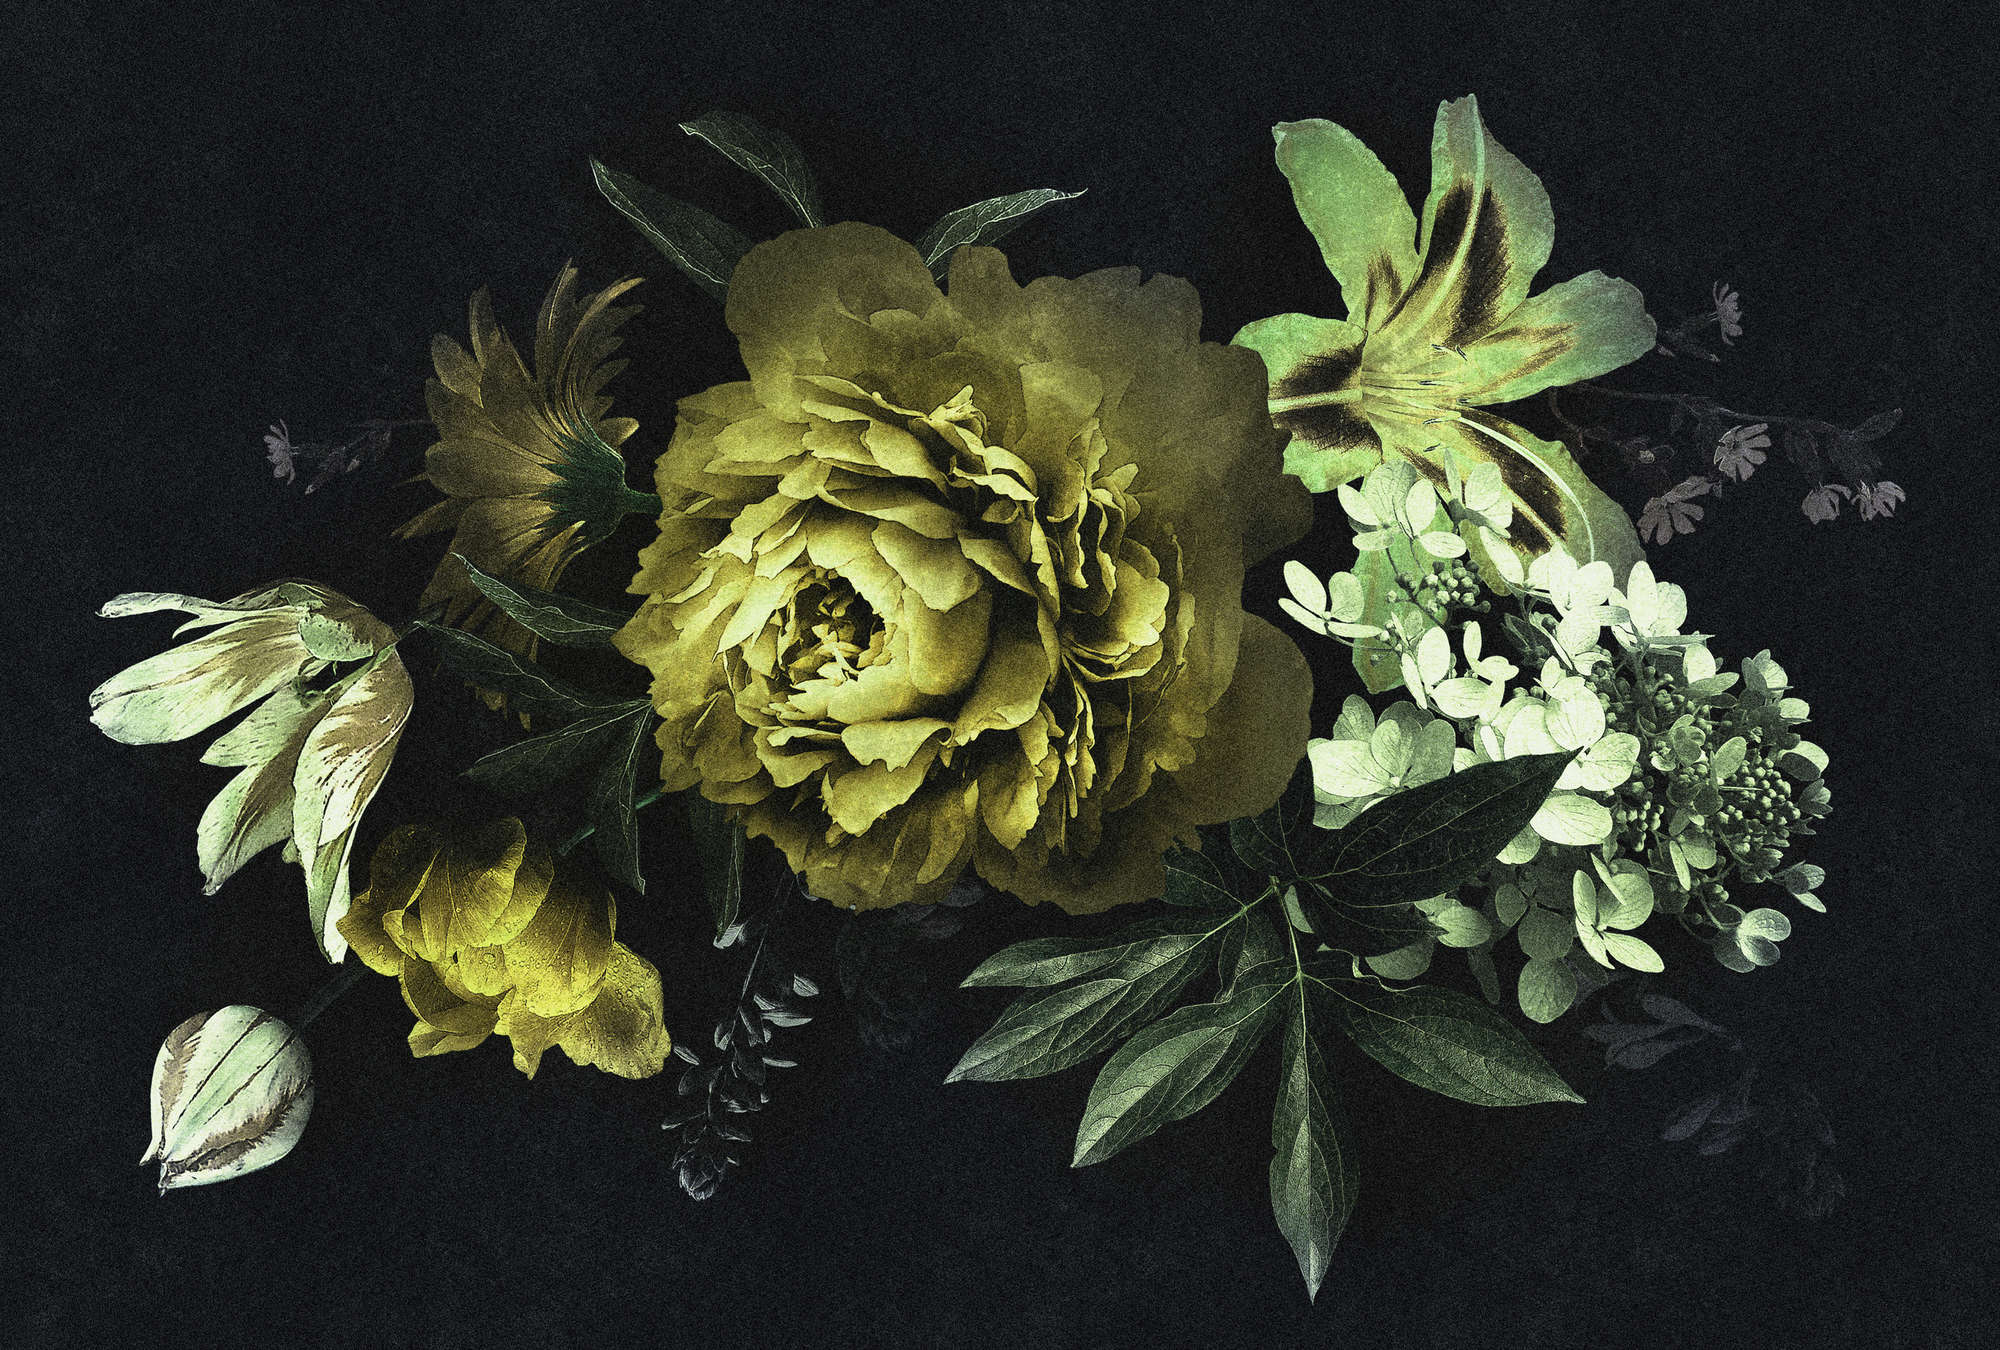             Drama Queen 2 - Boeket bloemen Onderlaag behang in kartonnen textuur in groen - Geel, zwart | Pearl Smooth Vliesbehang
        